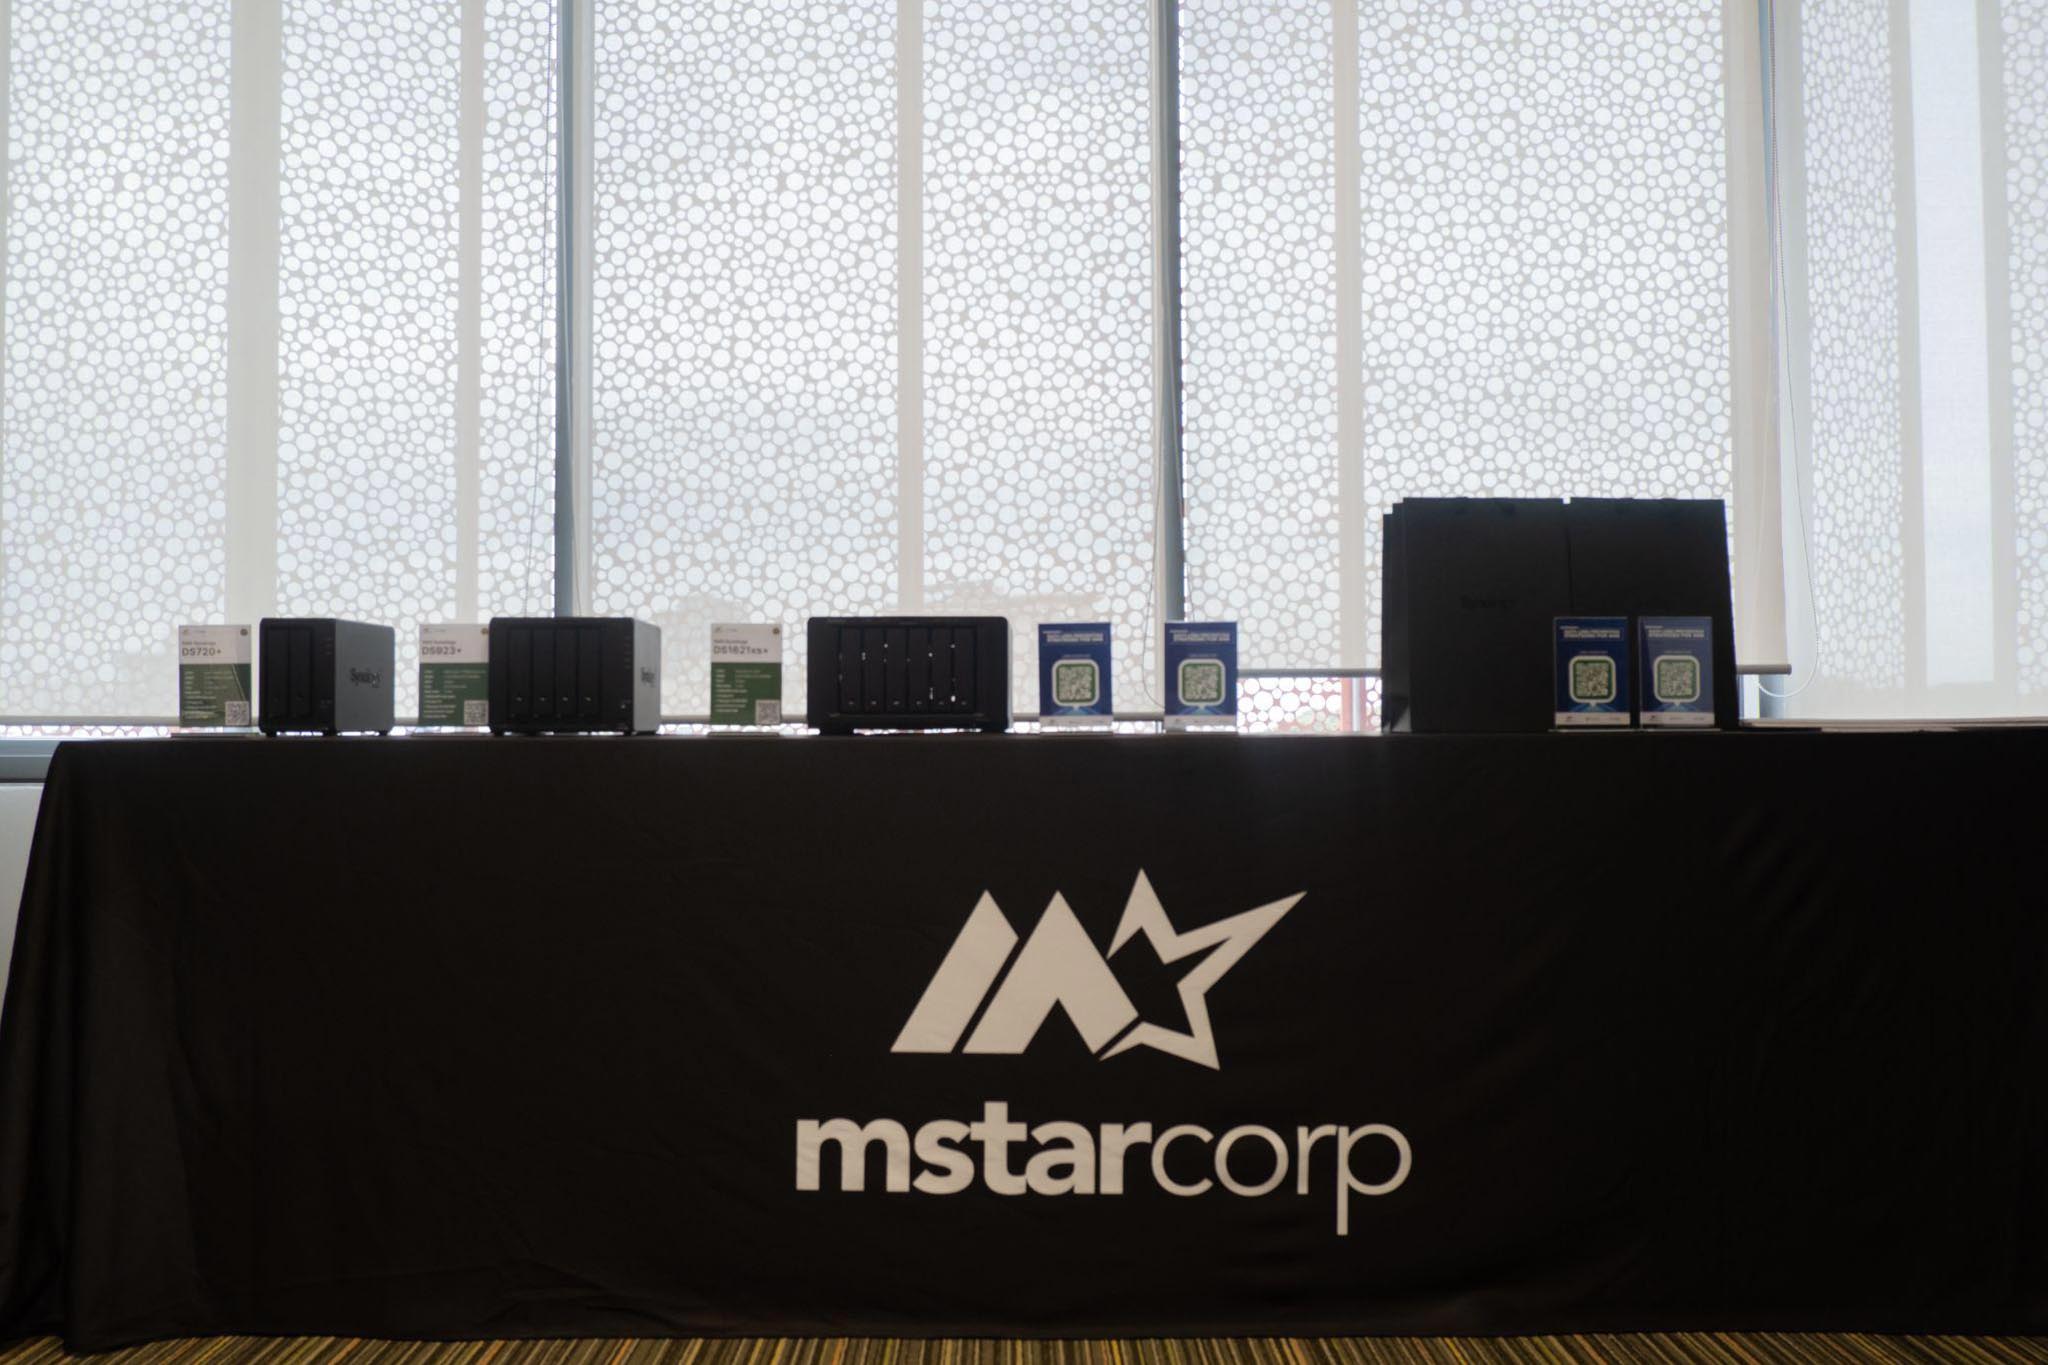 Mstar Corp tổ chức thành công Hội thảo “Data Loss Prevention Strategies For SMB”